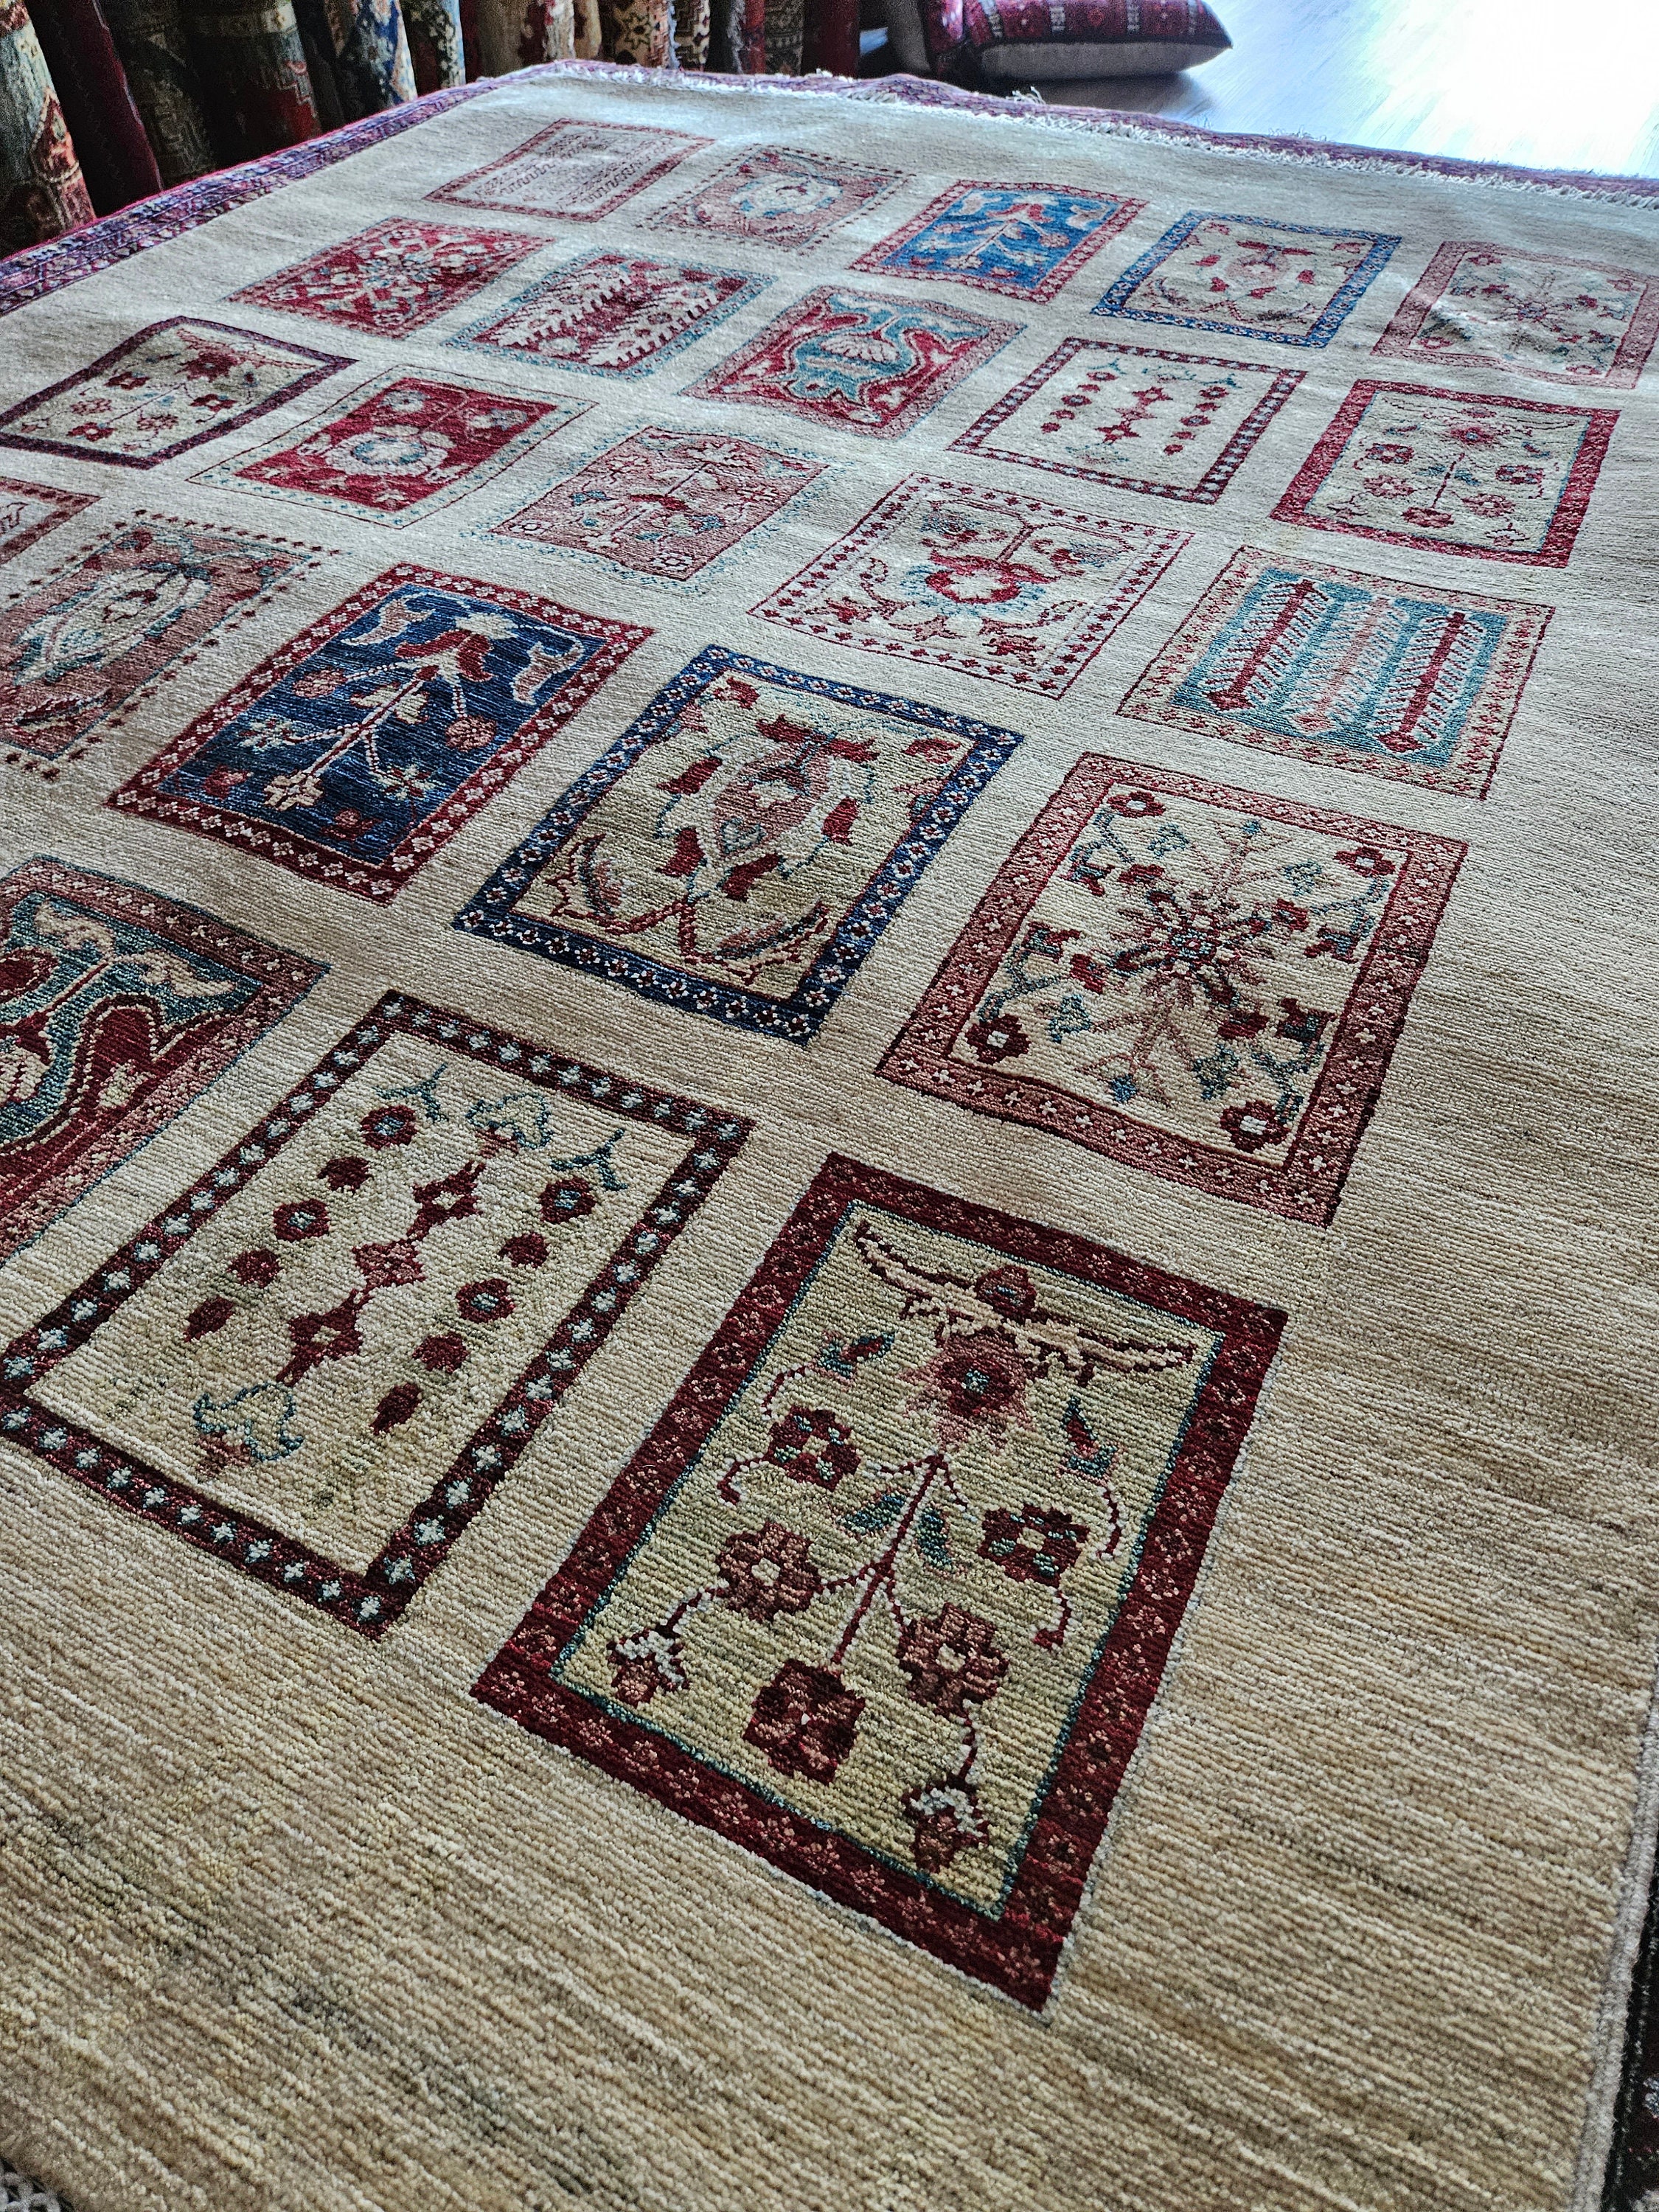 5 x 7 ft Handmade Afghan Rug, Turkmen Carpet